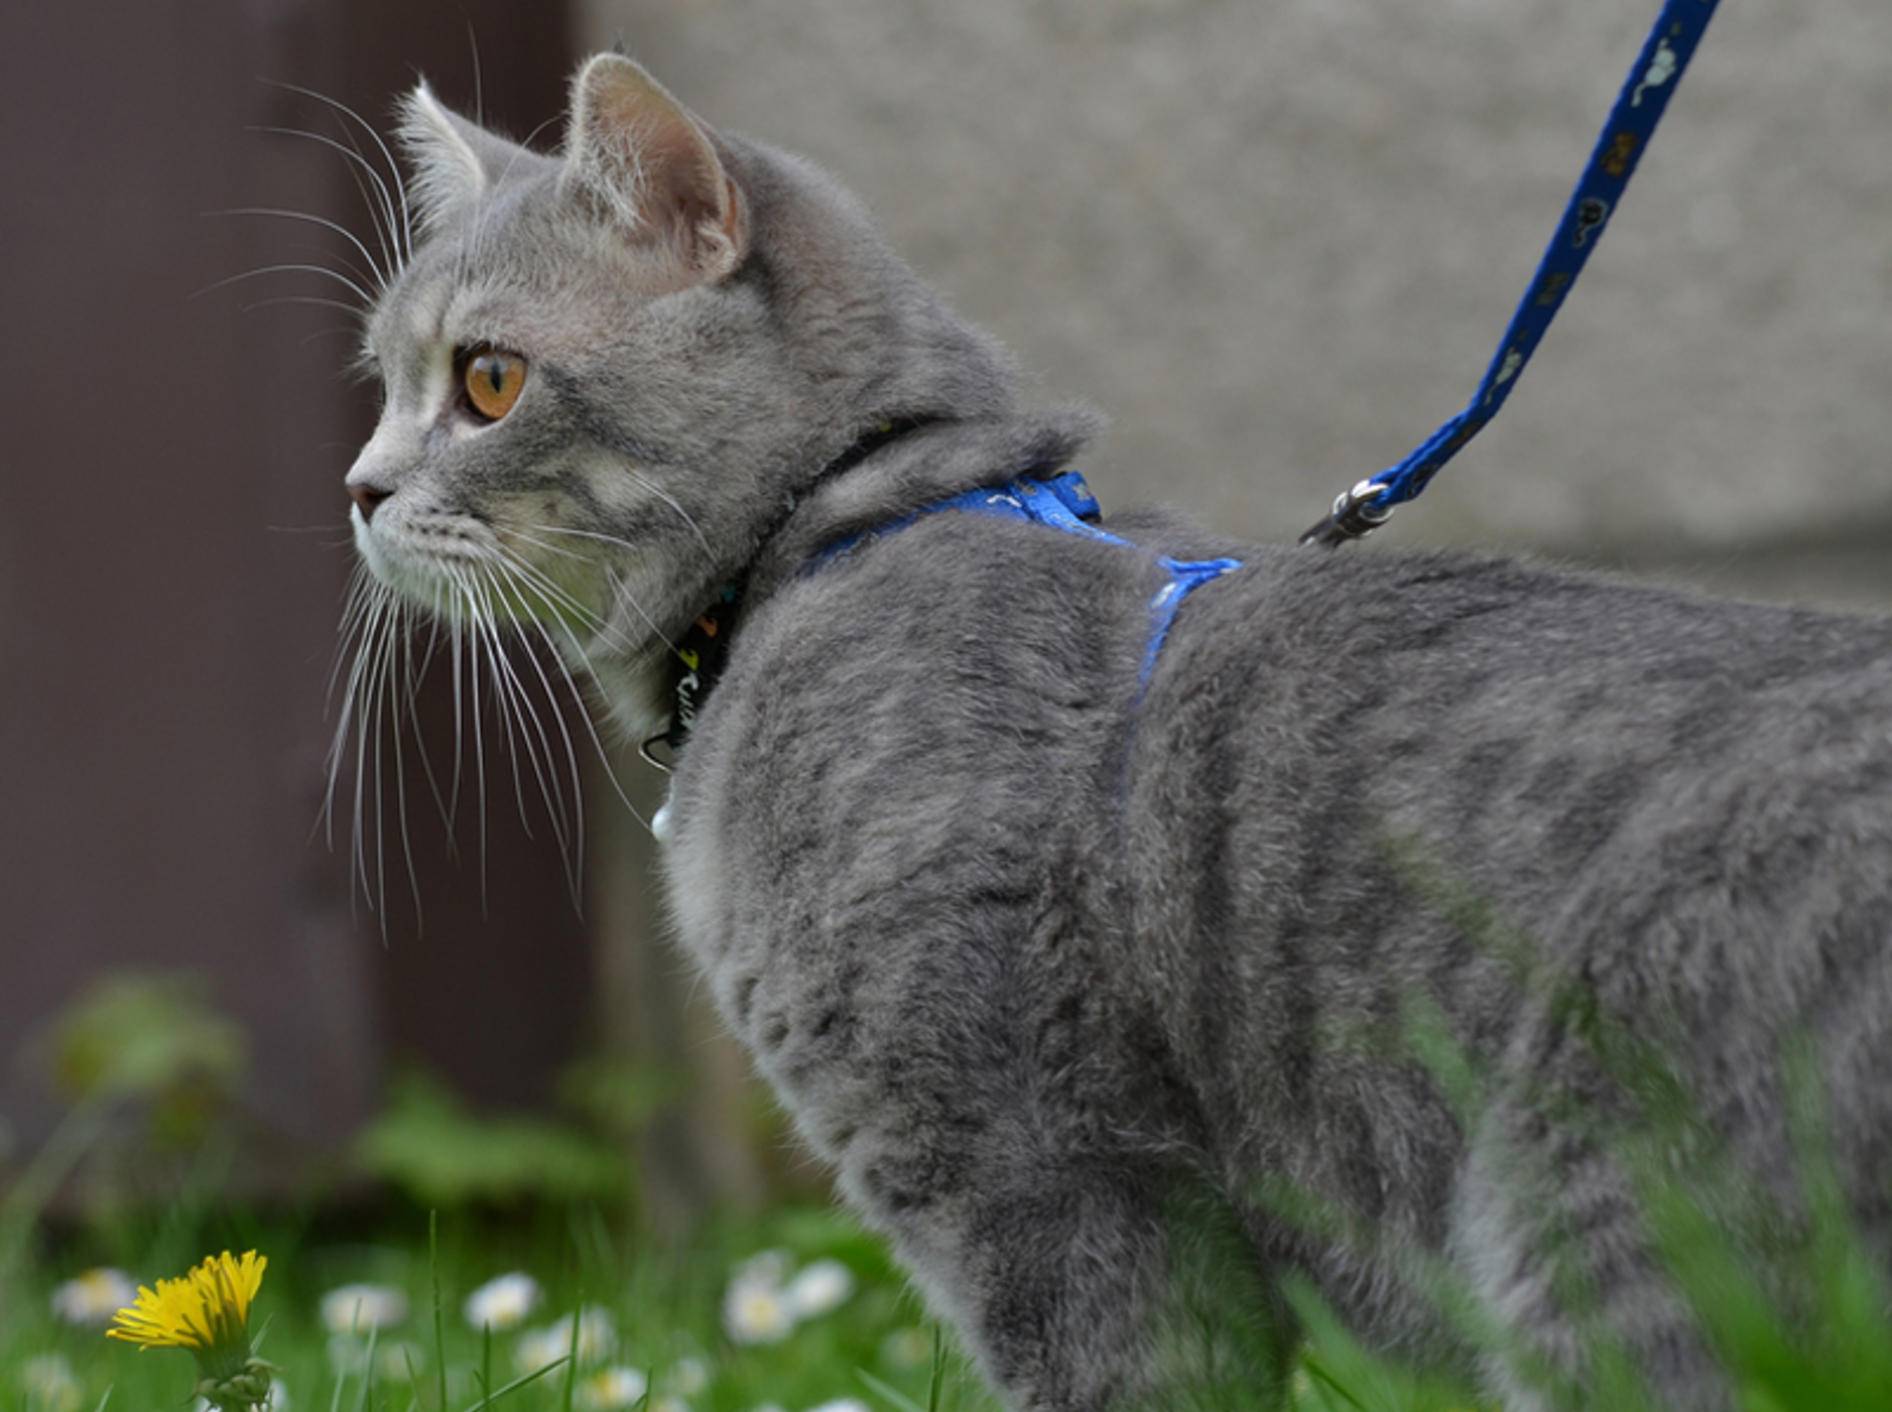 Spaziergänge mit der Katze an der Leine sind nicht unbedingt eine gute Idee – Bild: Shutterstock / Dreidos